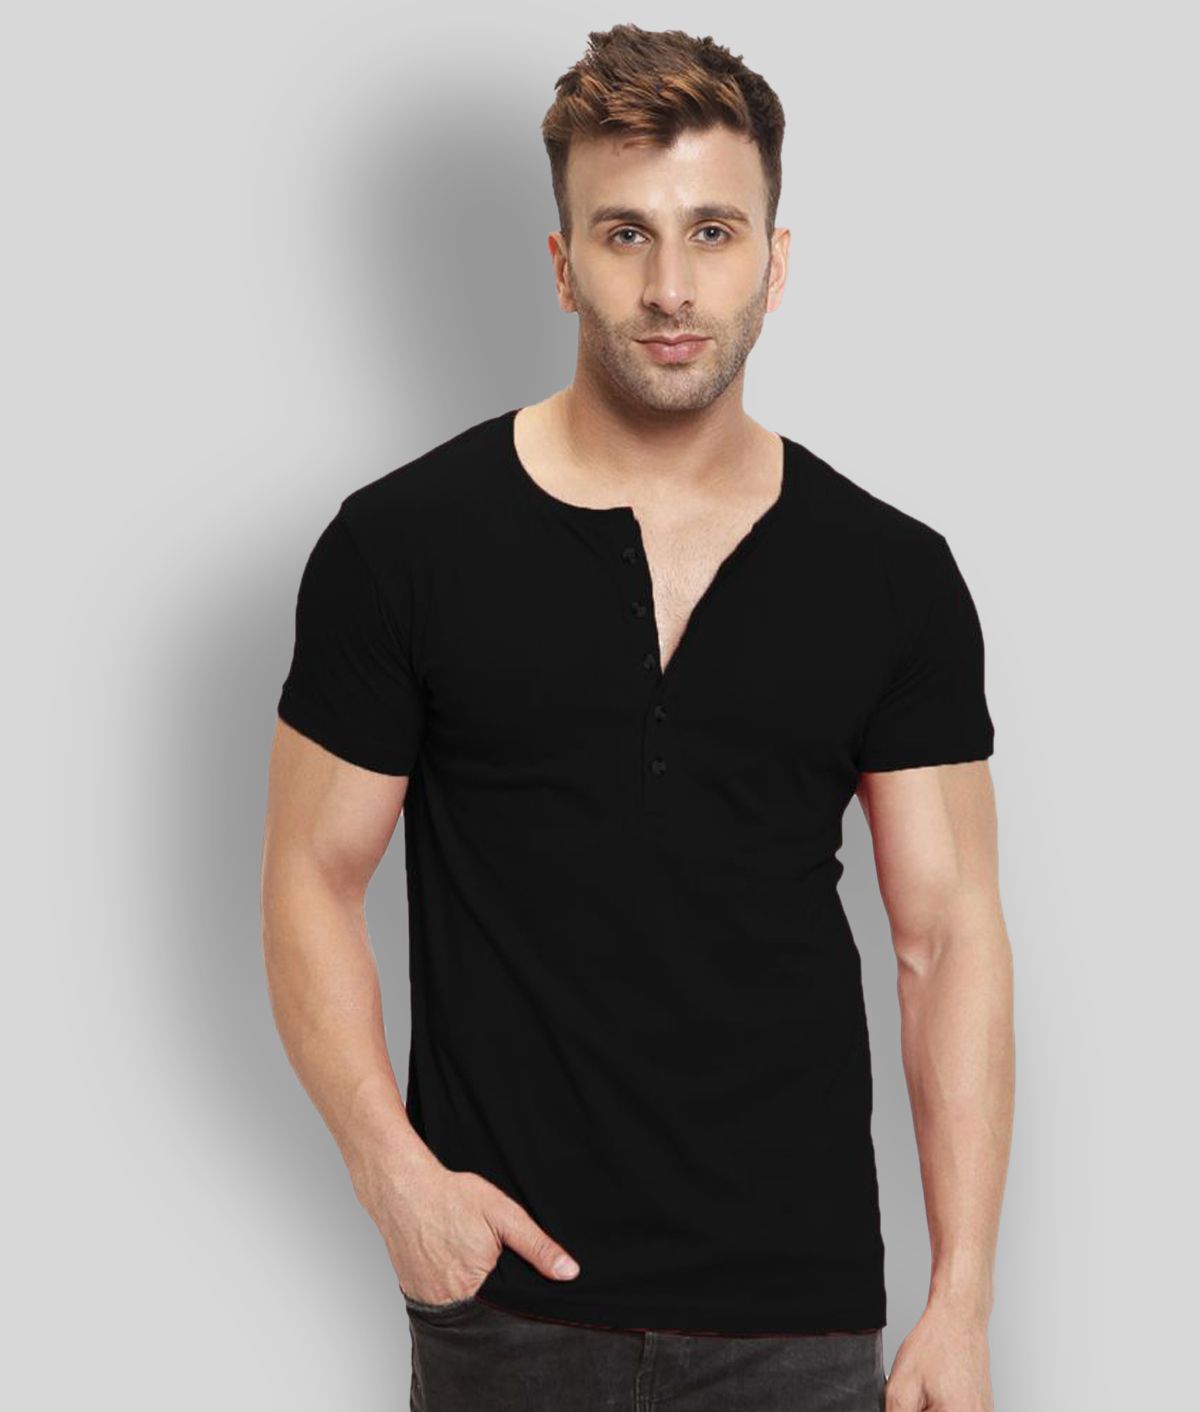     			Leotude - Black Cotton Regular Fit Men's T-Shirt ( Pack of 1 )